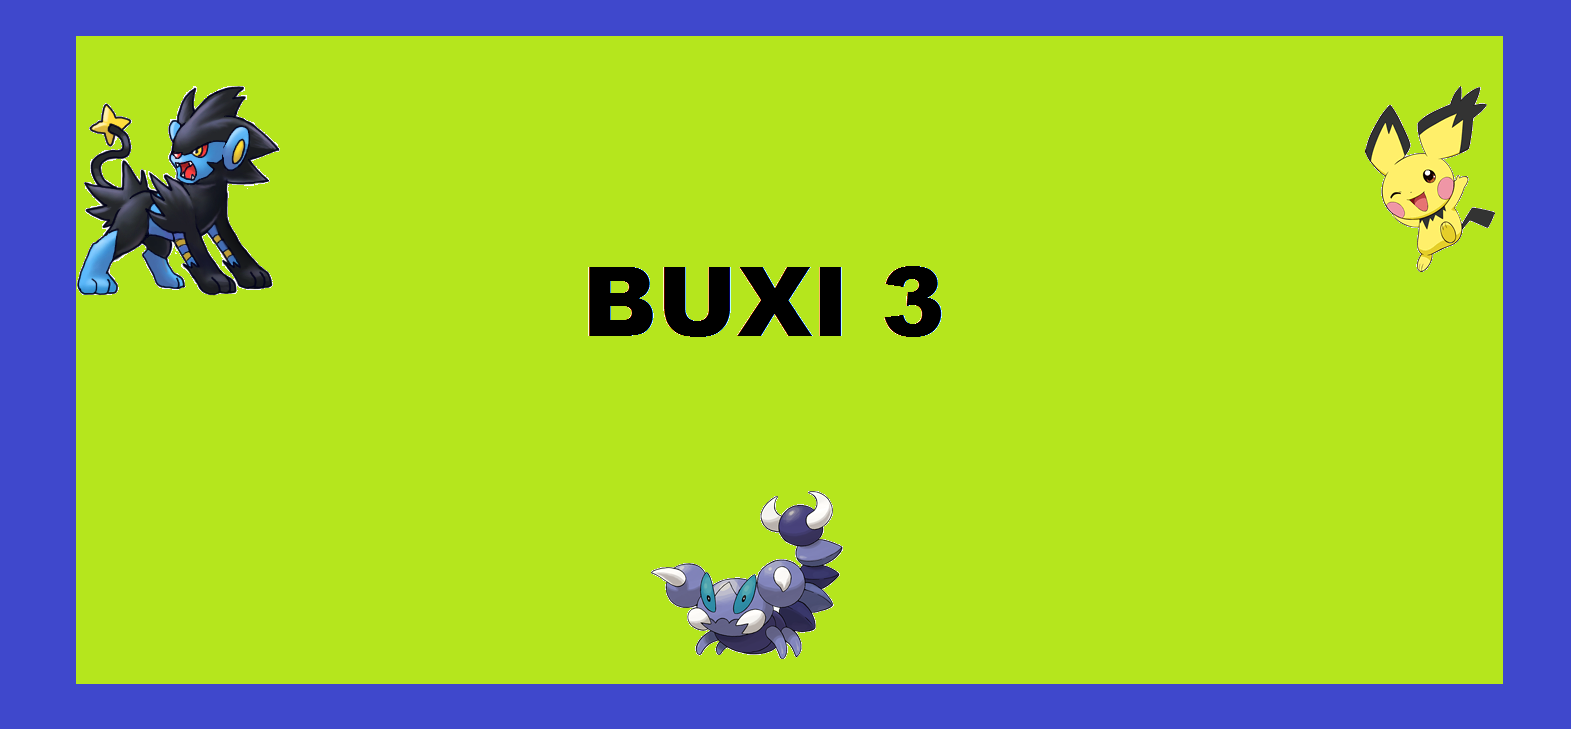 Für Buxi 3